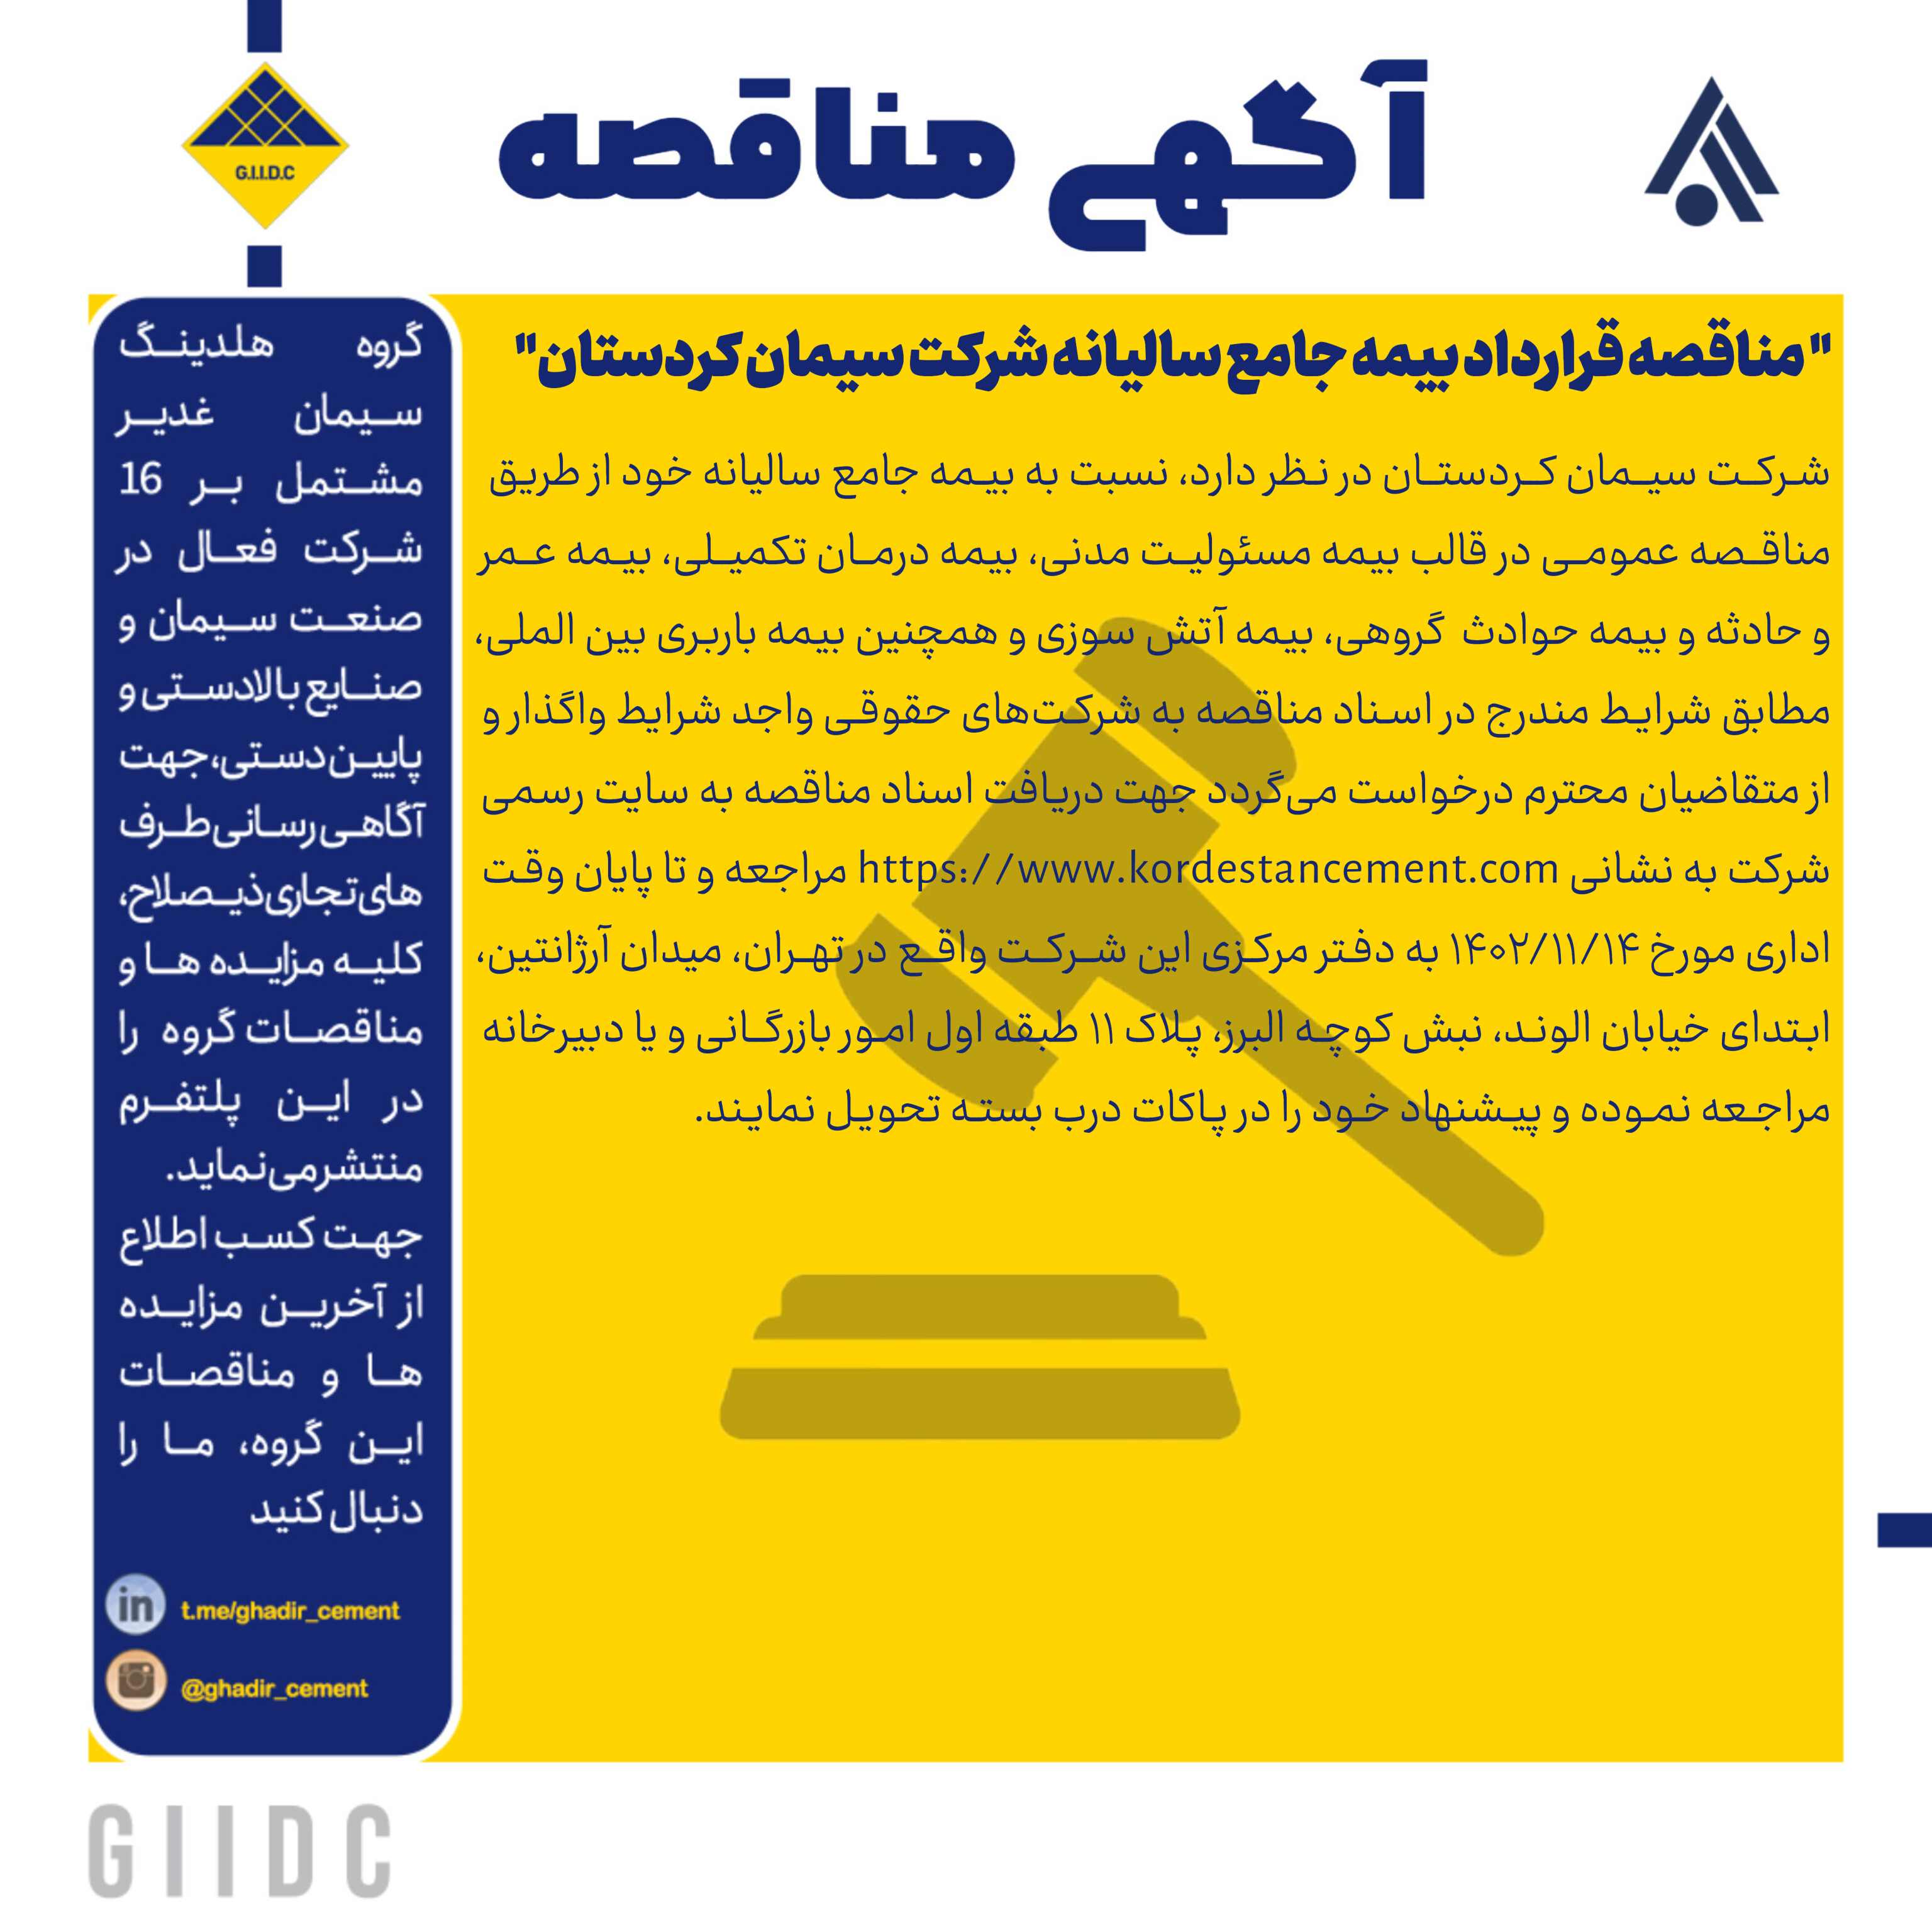   مناقصه قرارداد بیمه جامع سالیانه شرکت سیمان کردستان